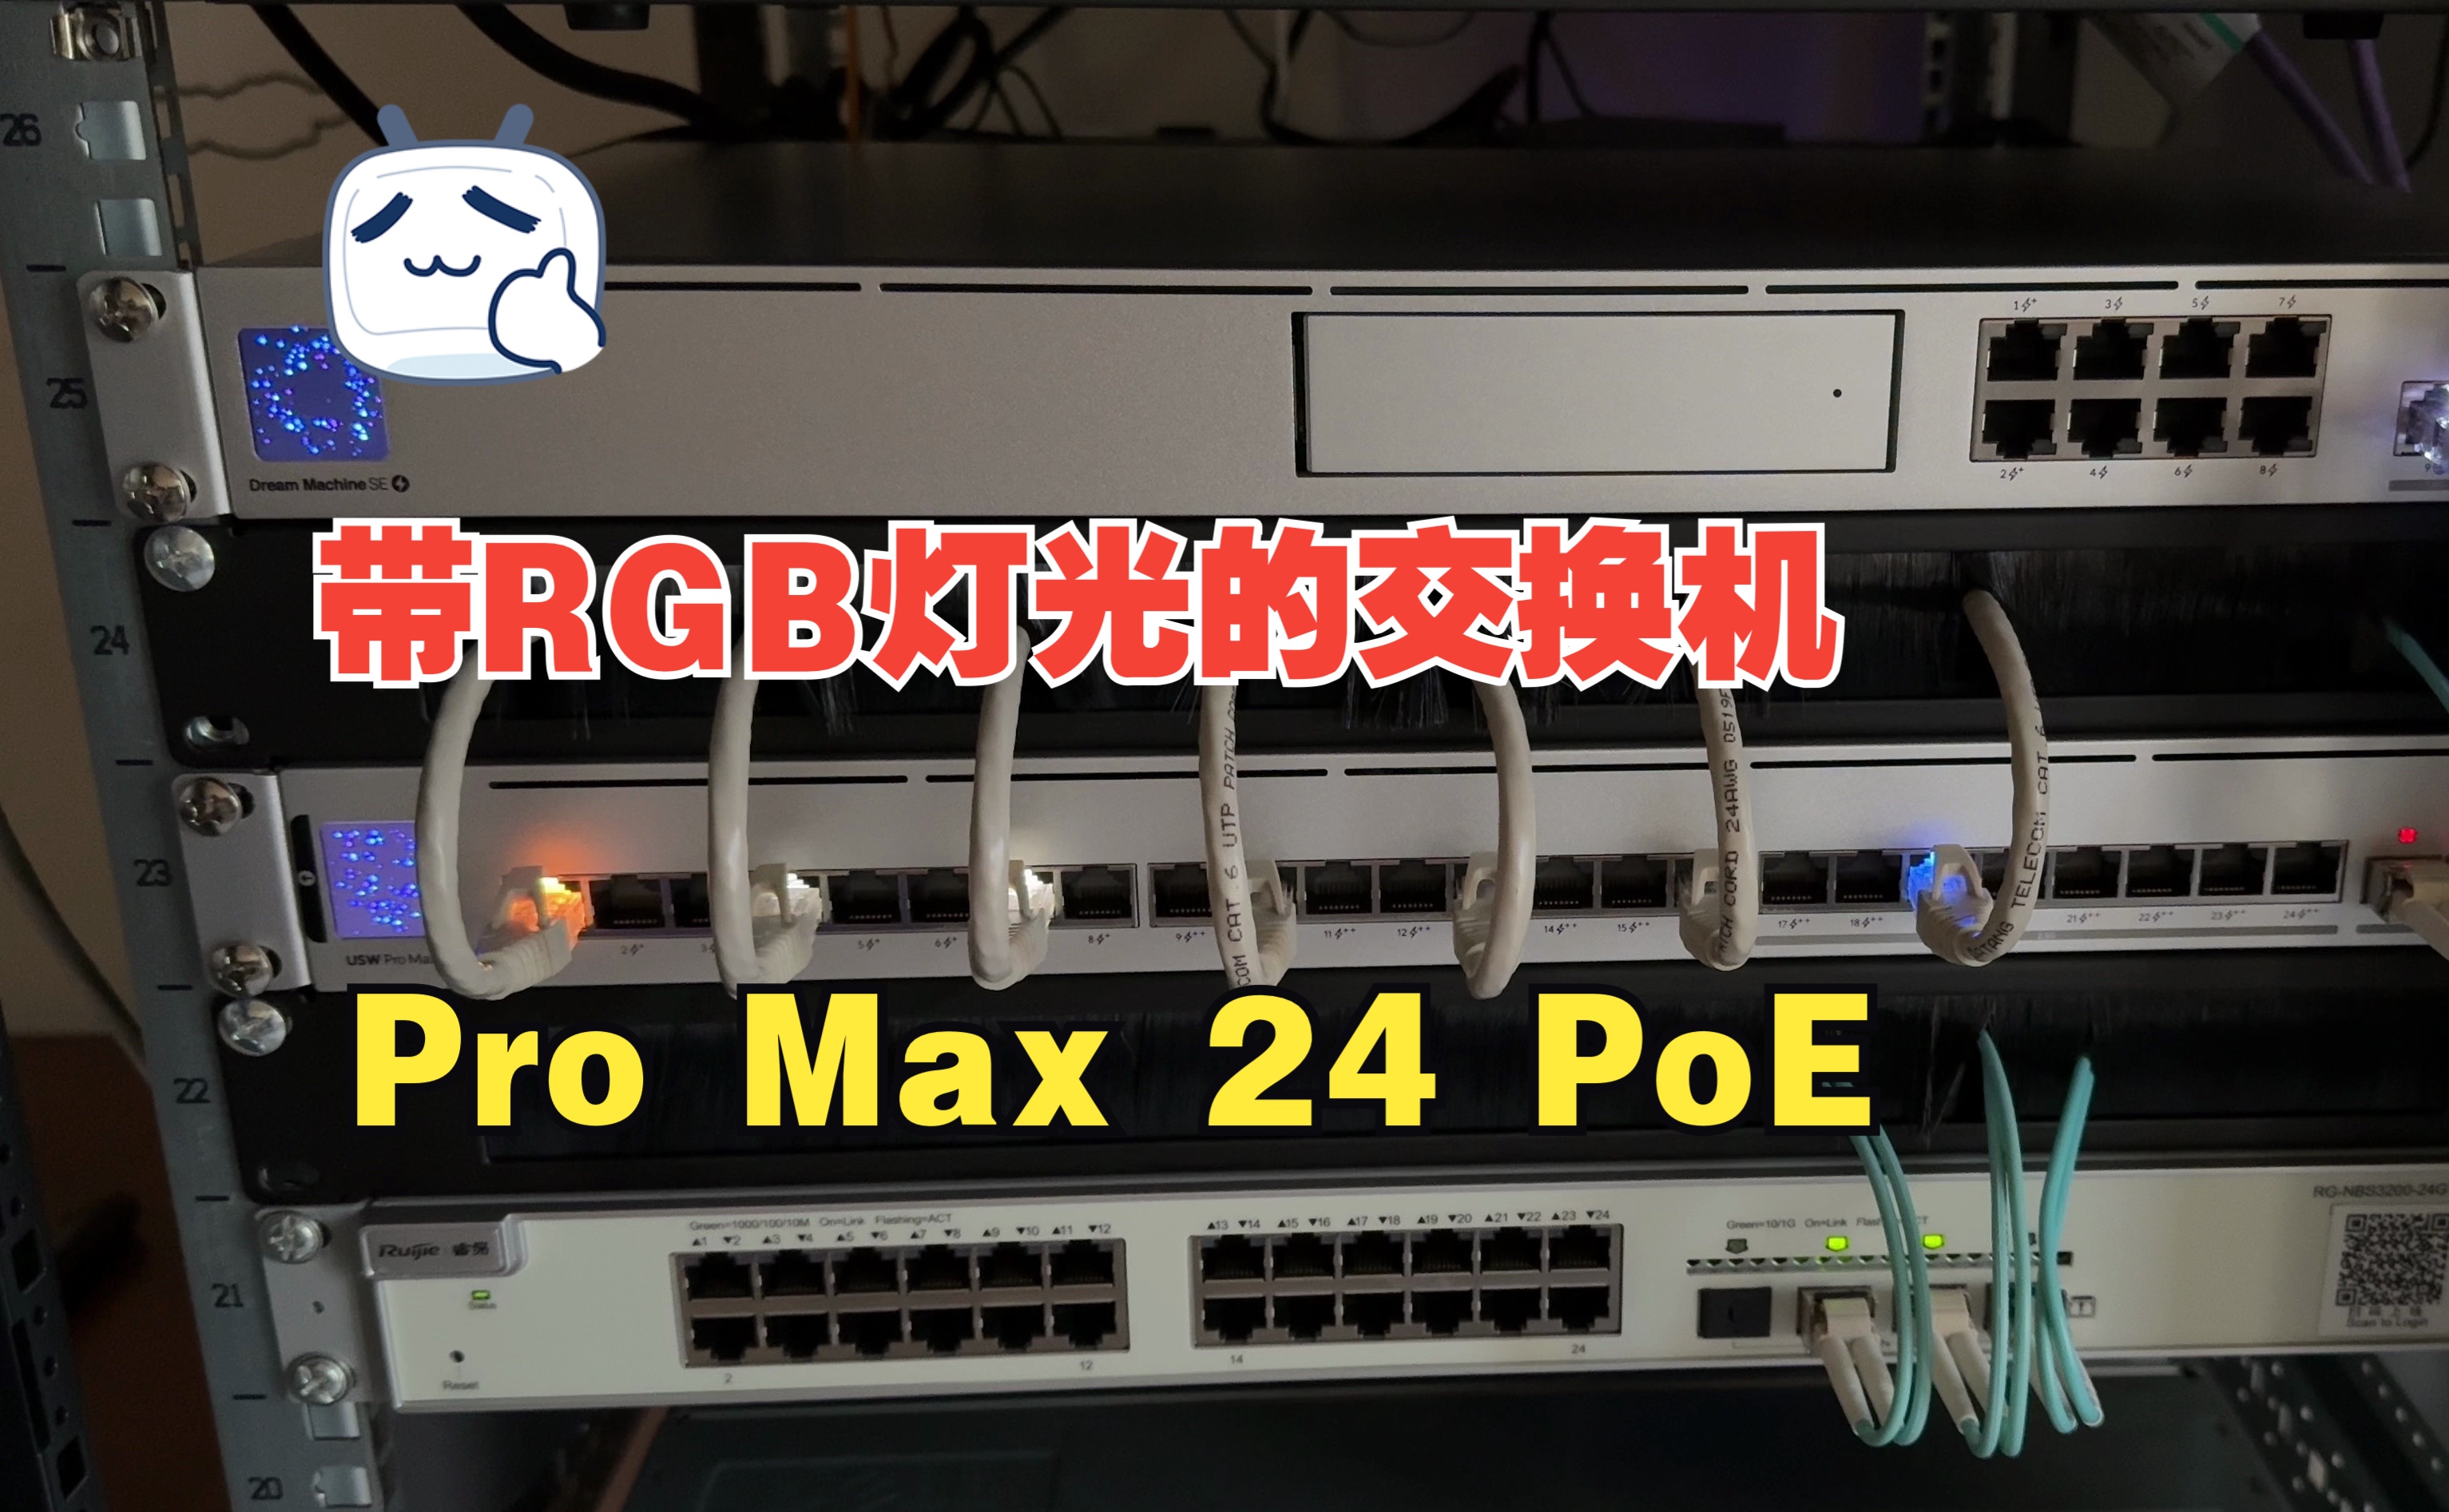 支持RGB灯光的交换机 性能默认有提升 Pro Max 24 PoE